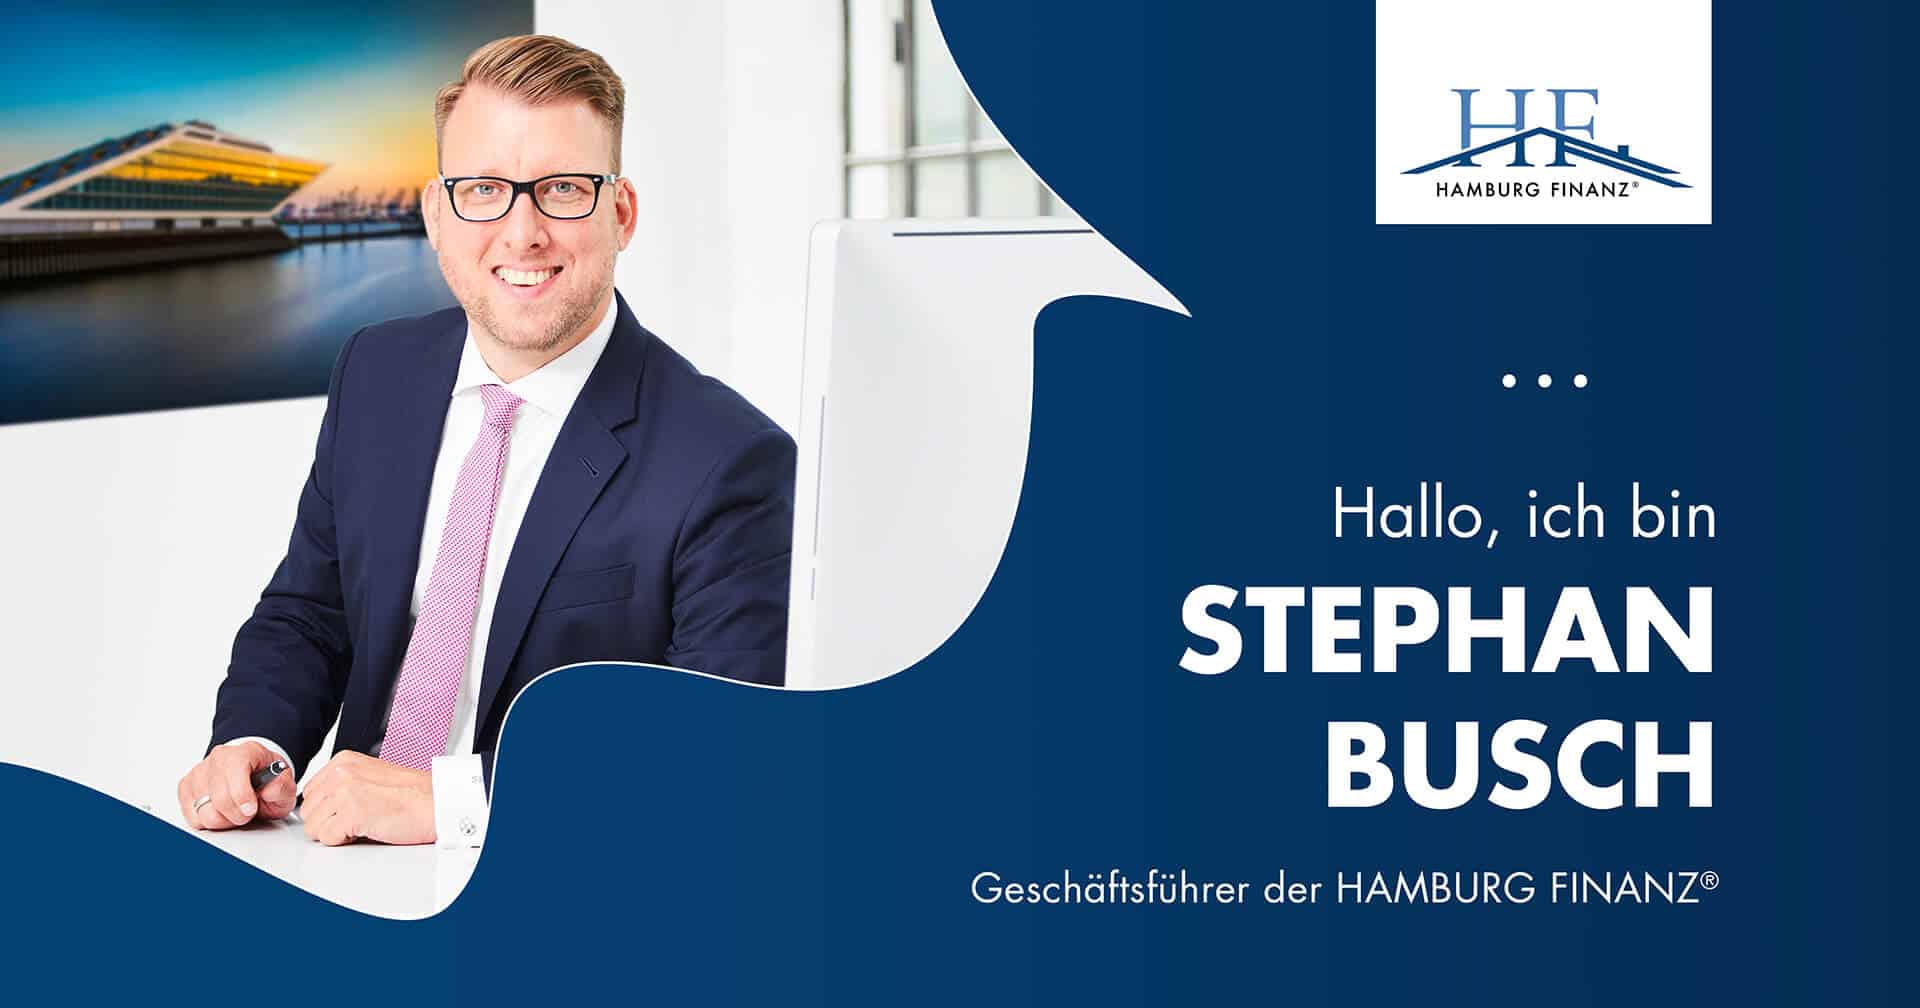 Herr Busch Hamburg Finanz